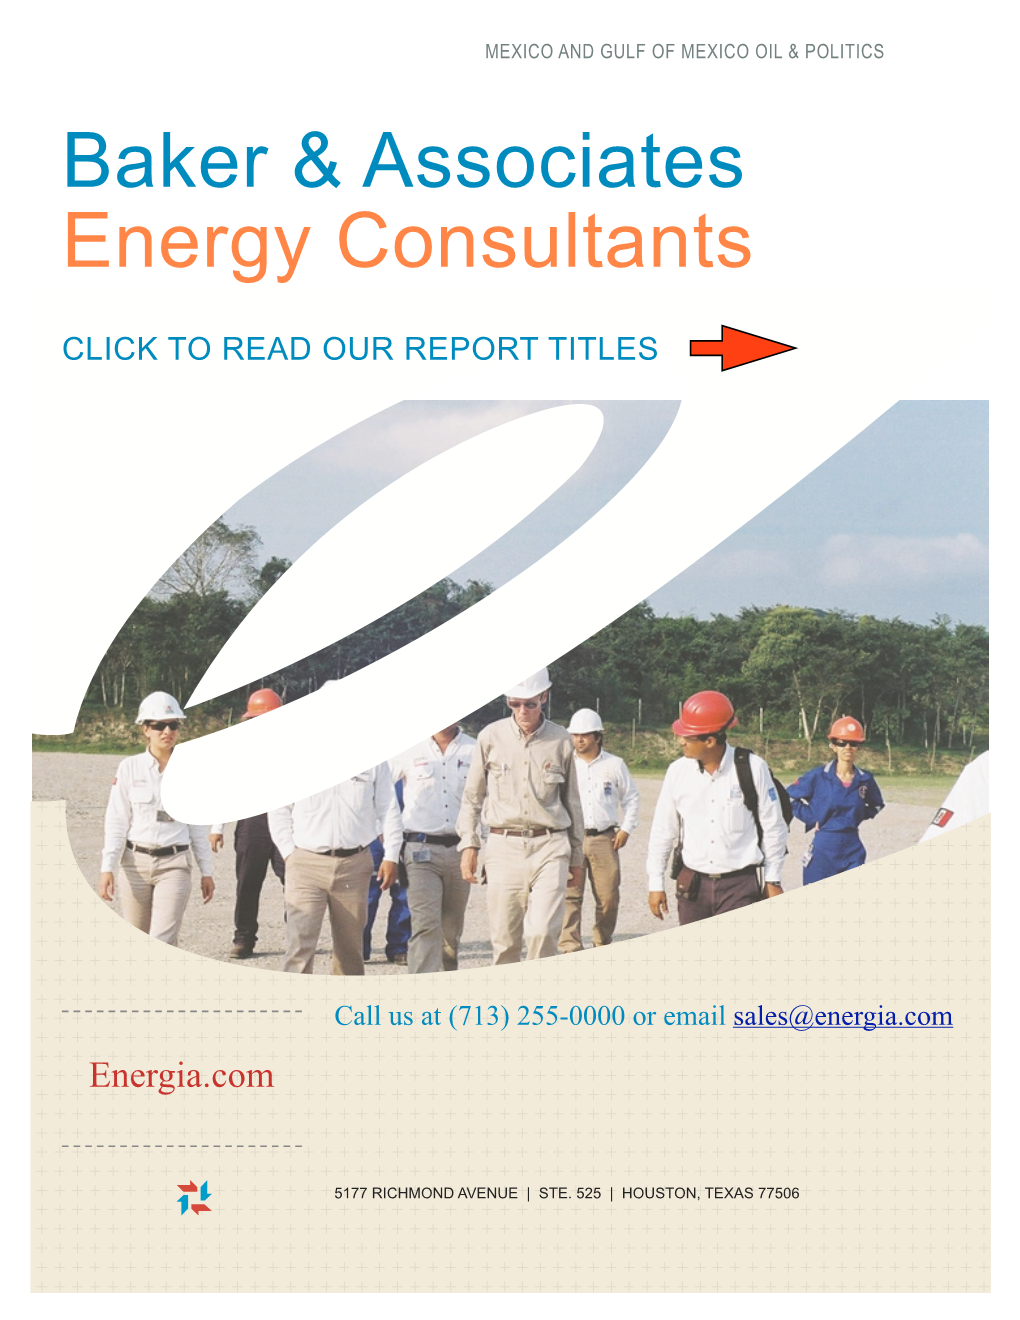 Baker & Associates Energy Consultants